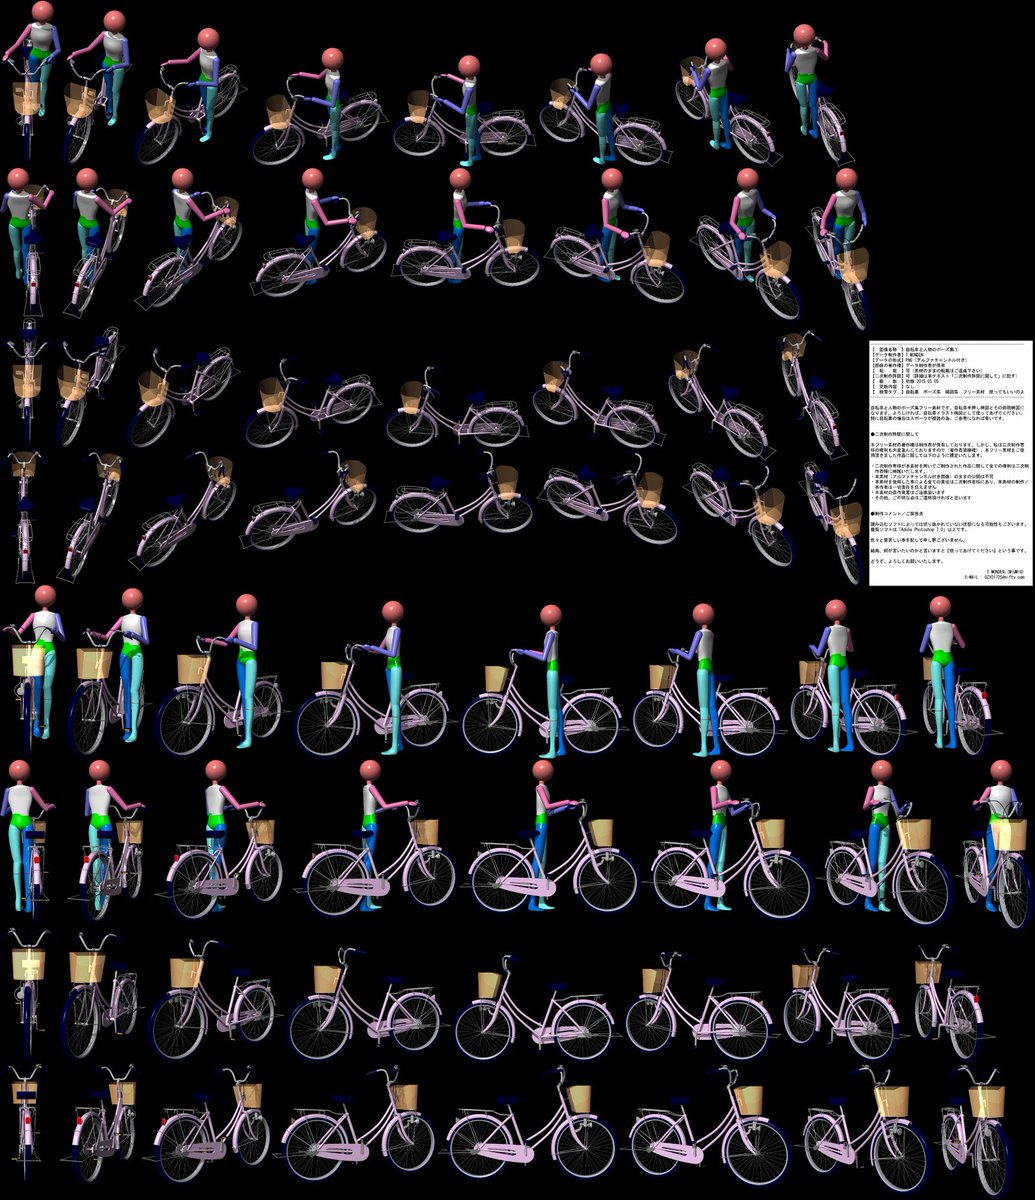 Nanatsuiro T Monden お仕事募集中 自分のpixivブクマtop3をあげる 条件は満たしているはず だけど何故か切ない ｏｔｌ 自転車の大きい画像 フリー素材 は Pixiv さんで公開中です T Co Yqfhtxvtcn 絵描きさんと繋がりたい T Co